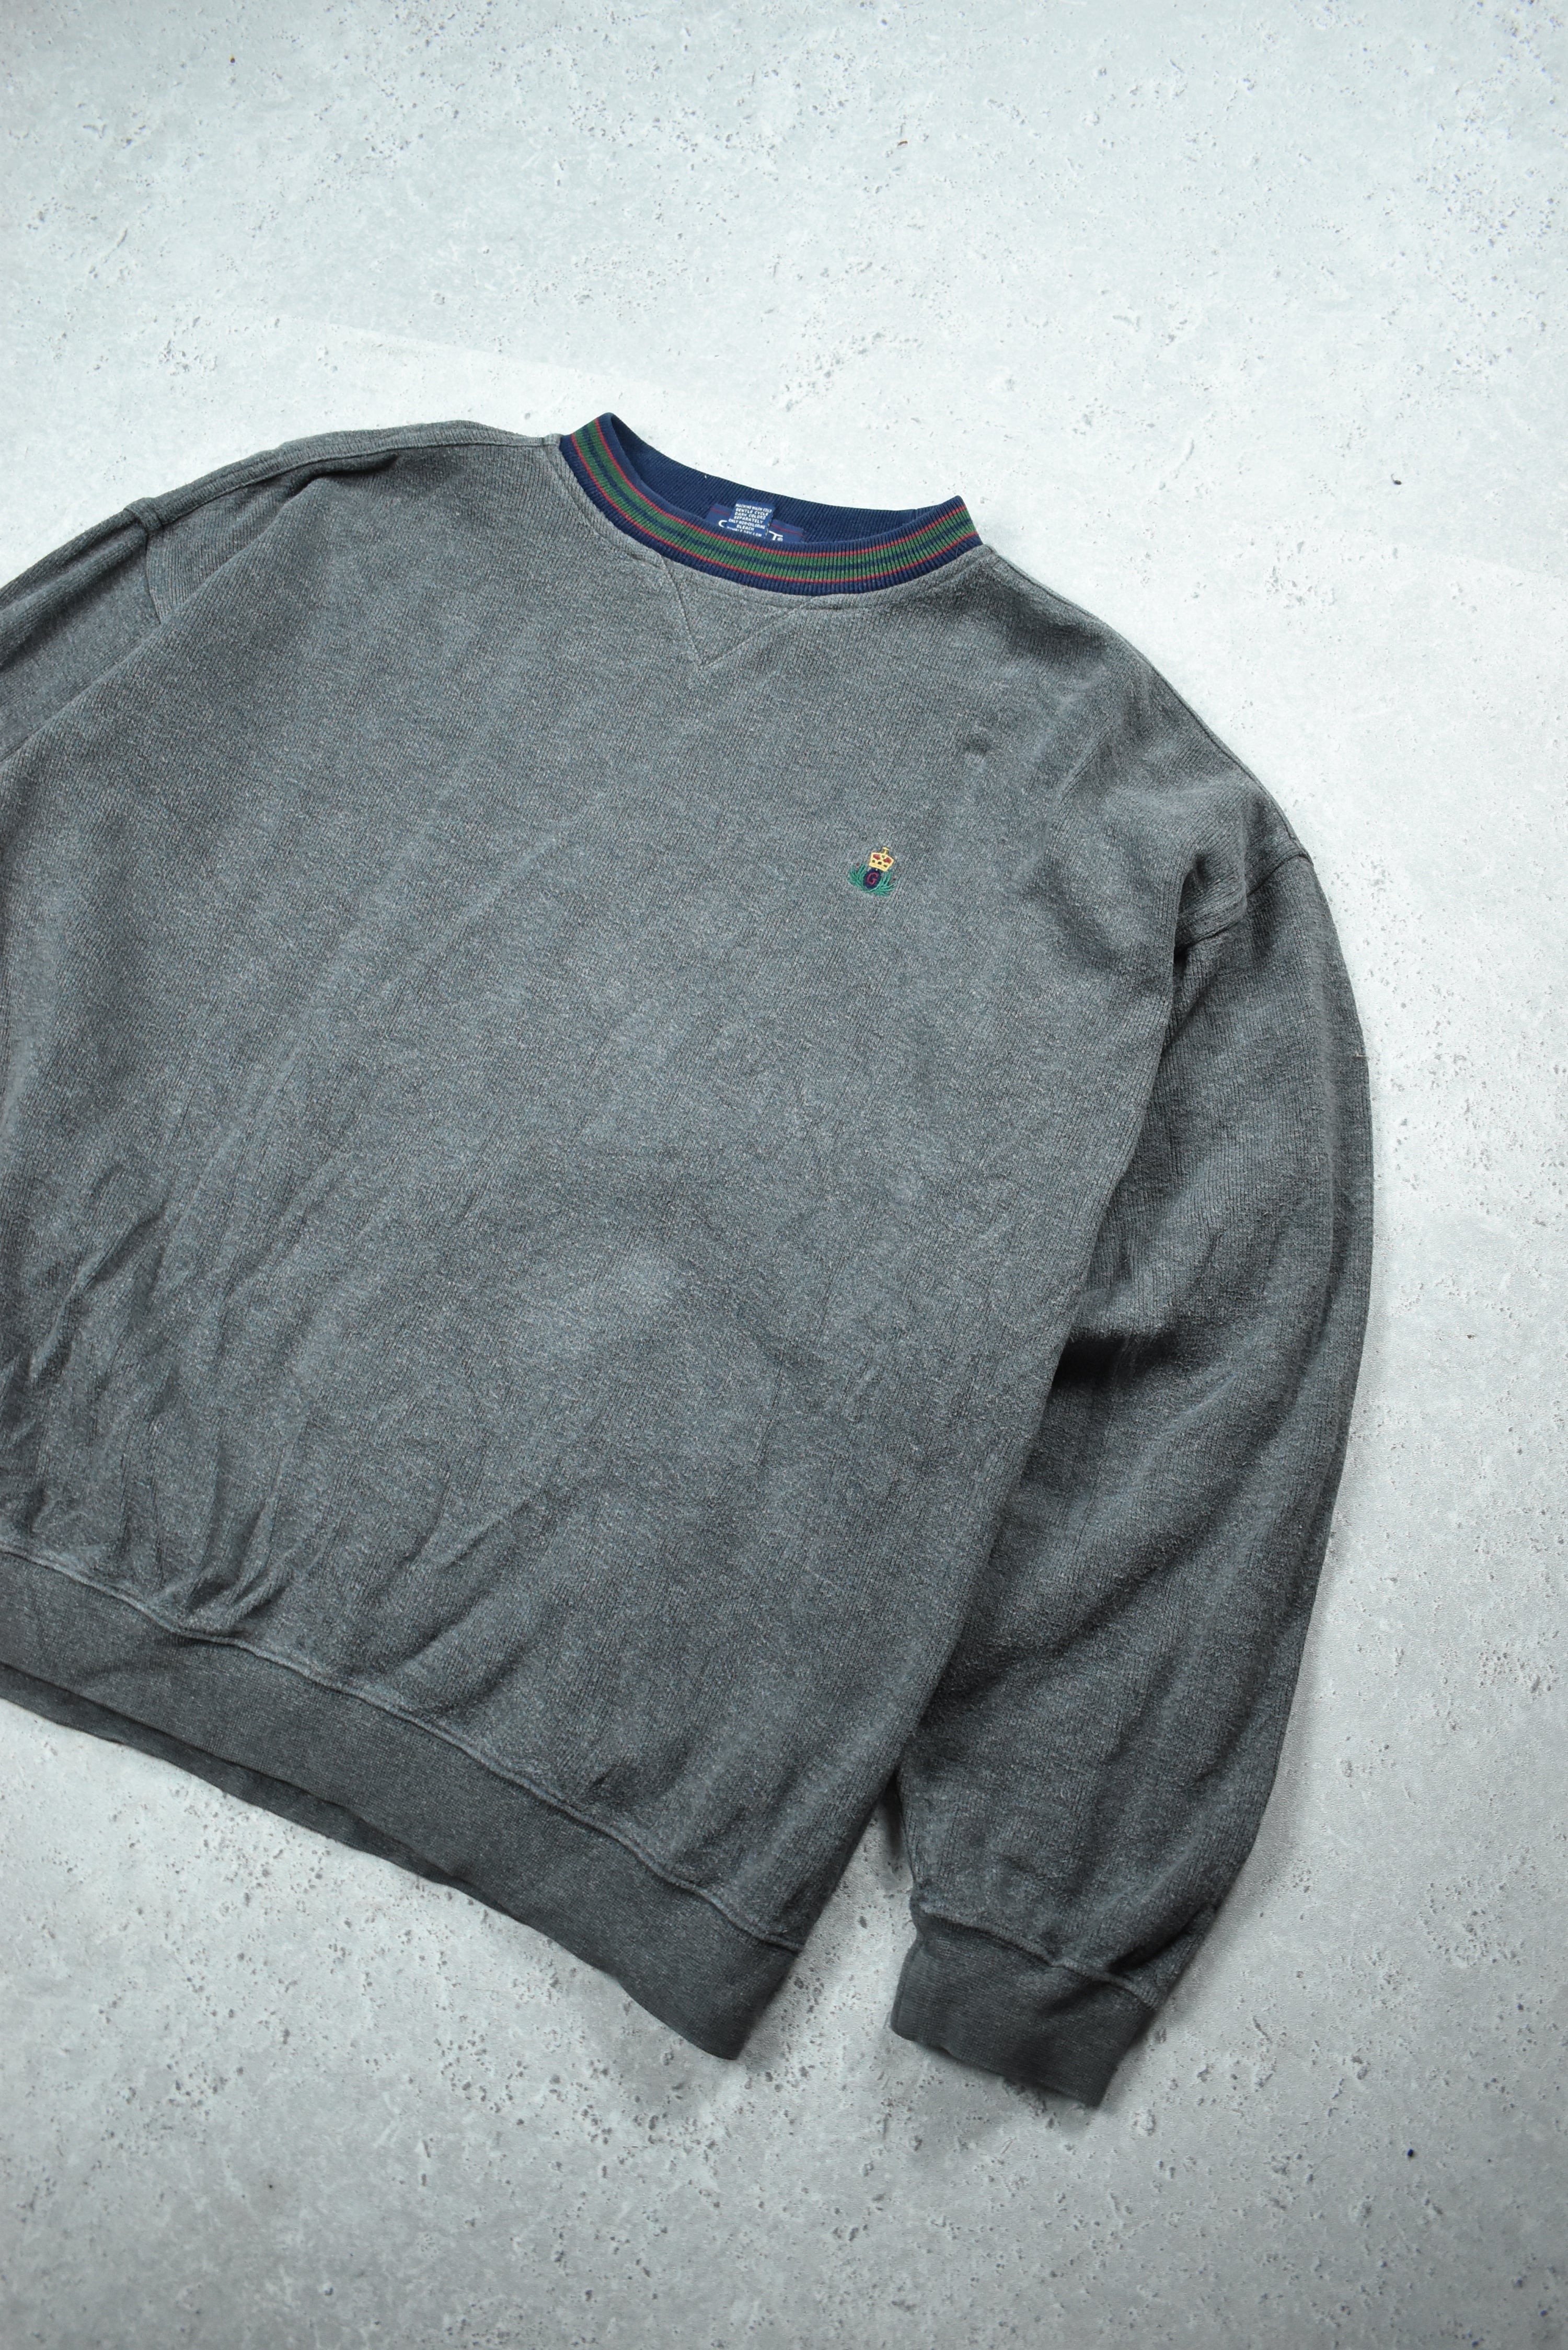 Vintage Chaps Ralph Lauren Sweatshirt Xlarge